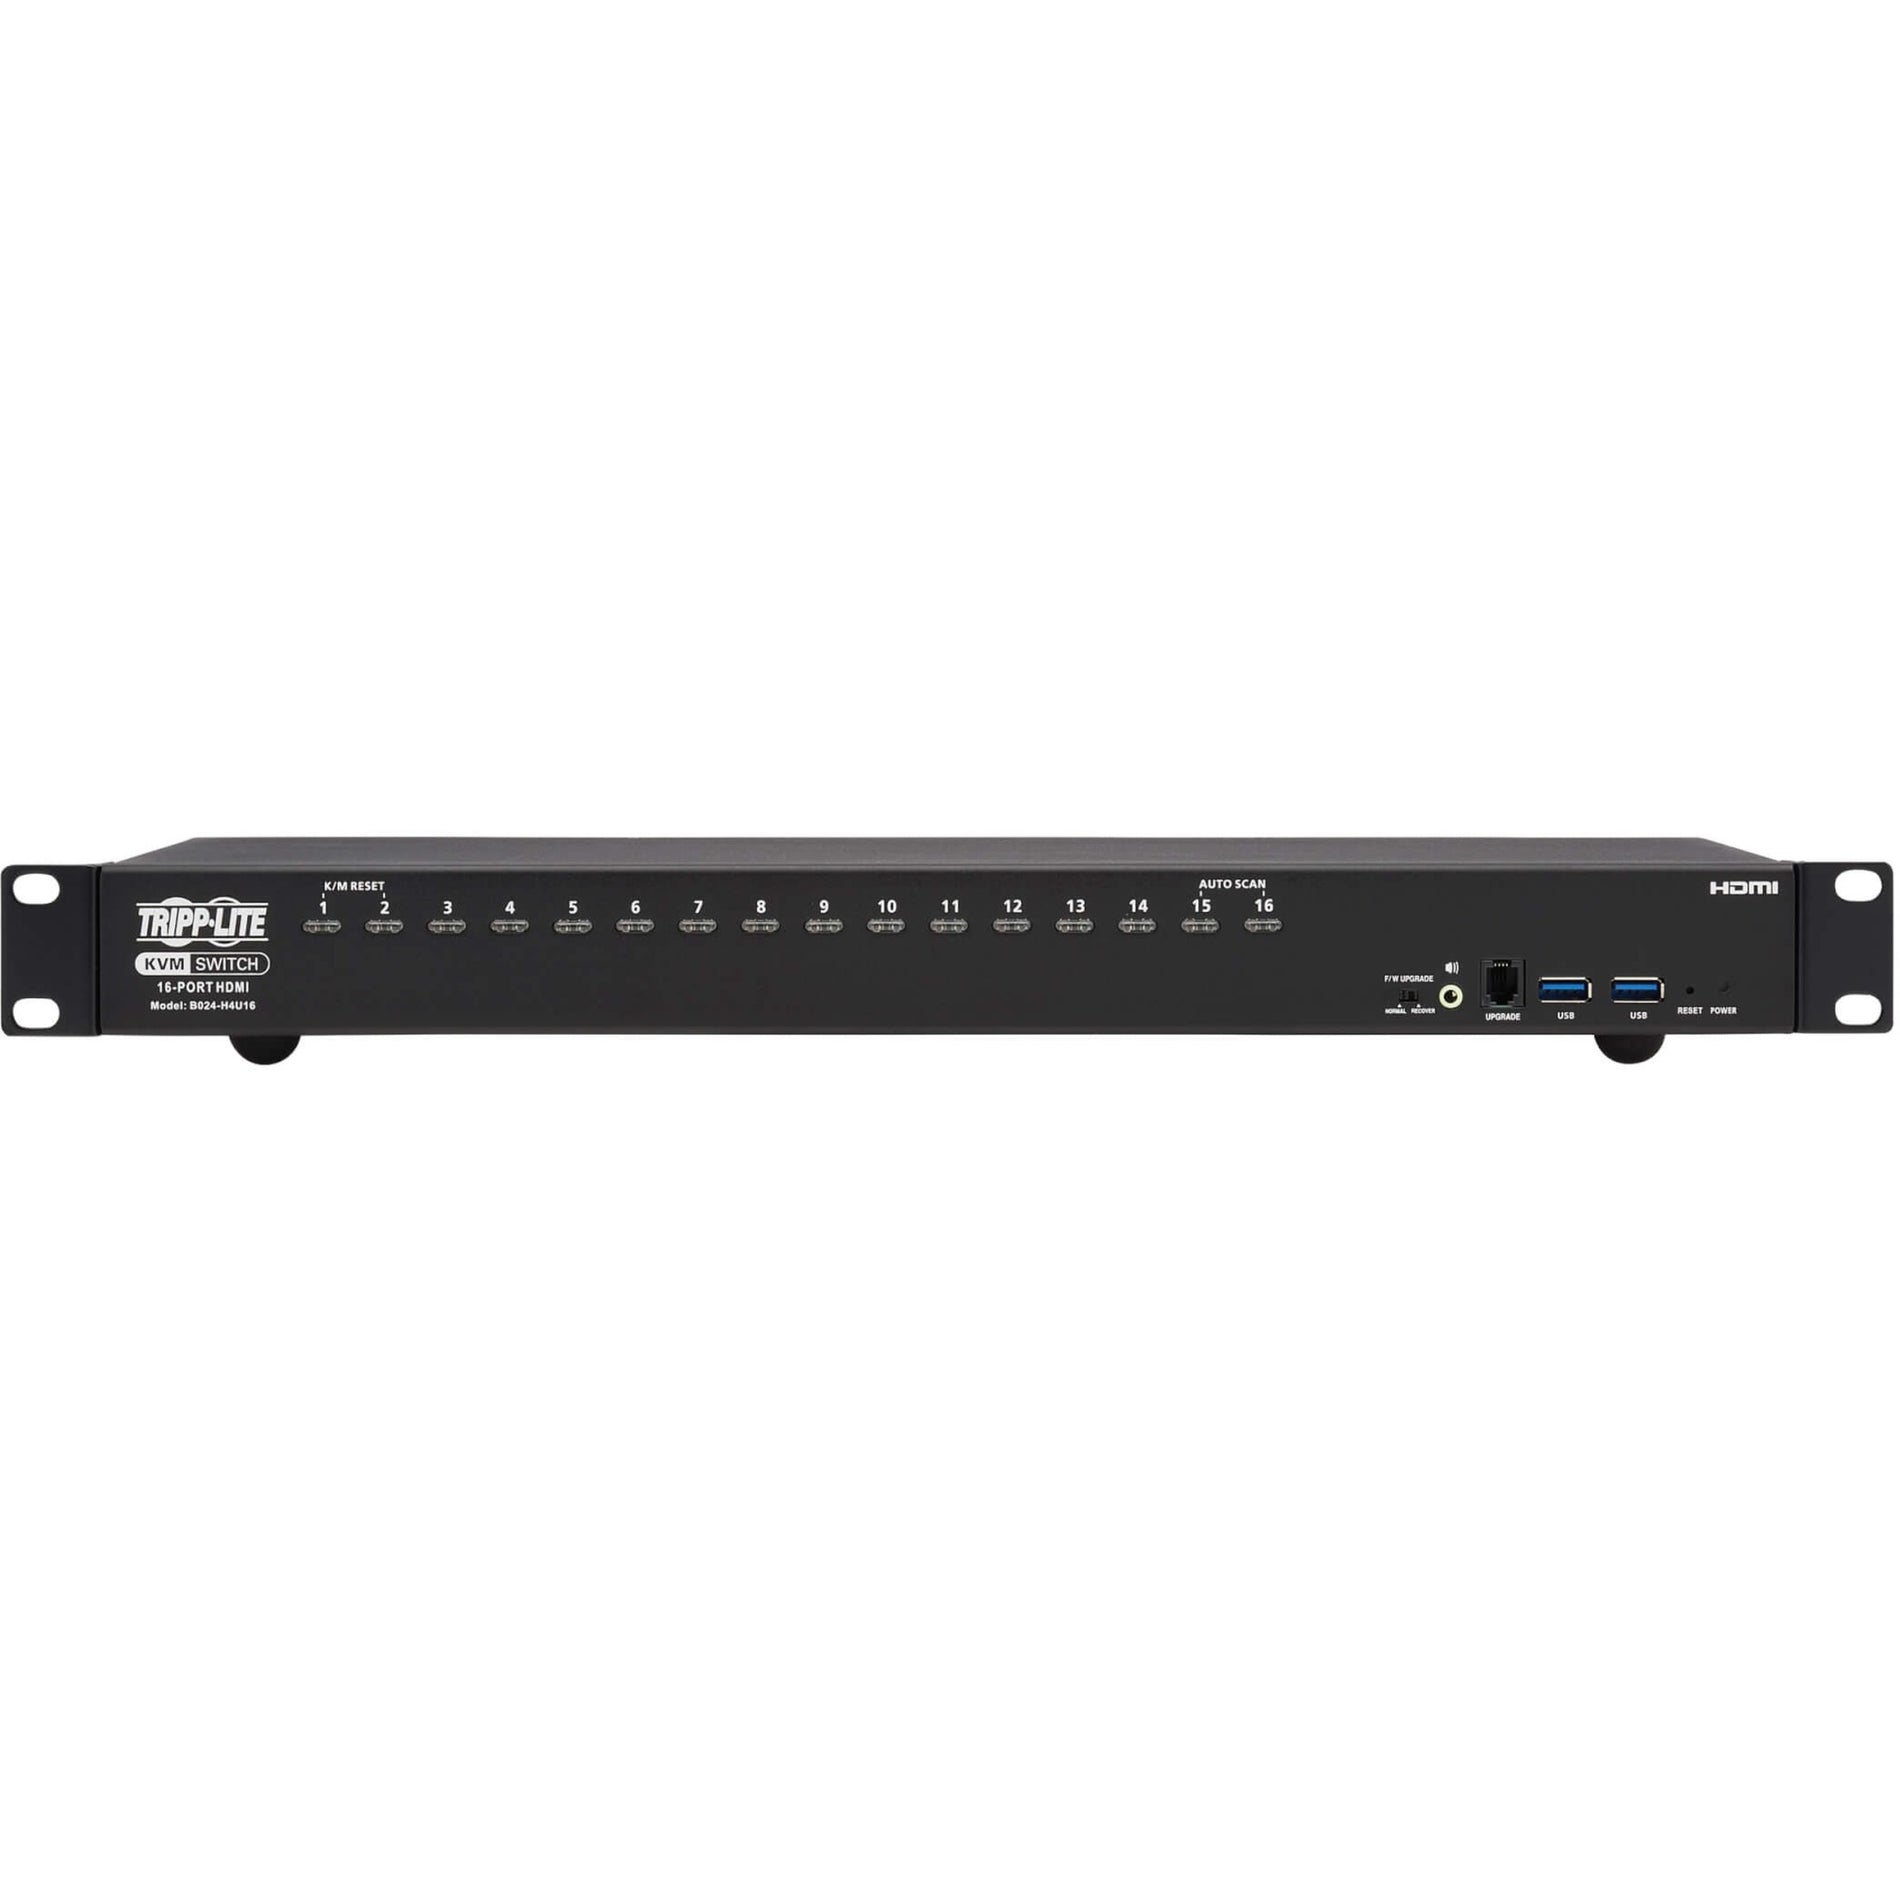 Tripp Lite B024-H4U16 16-Port HDMI/USB KVM Switch, 1U, 4K Resolution, TAA Compliant